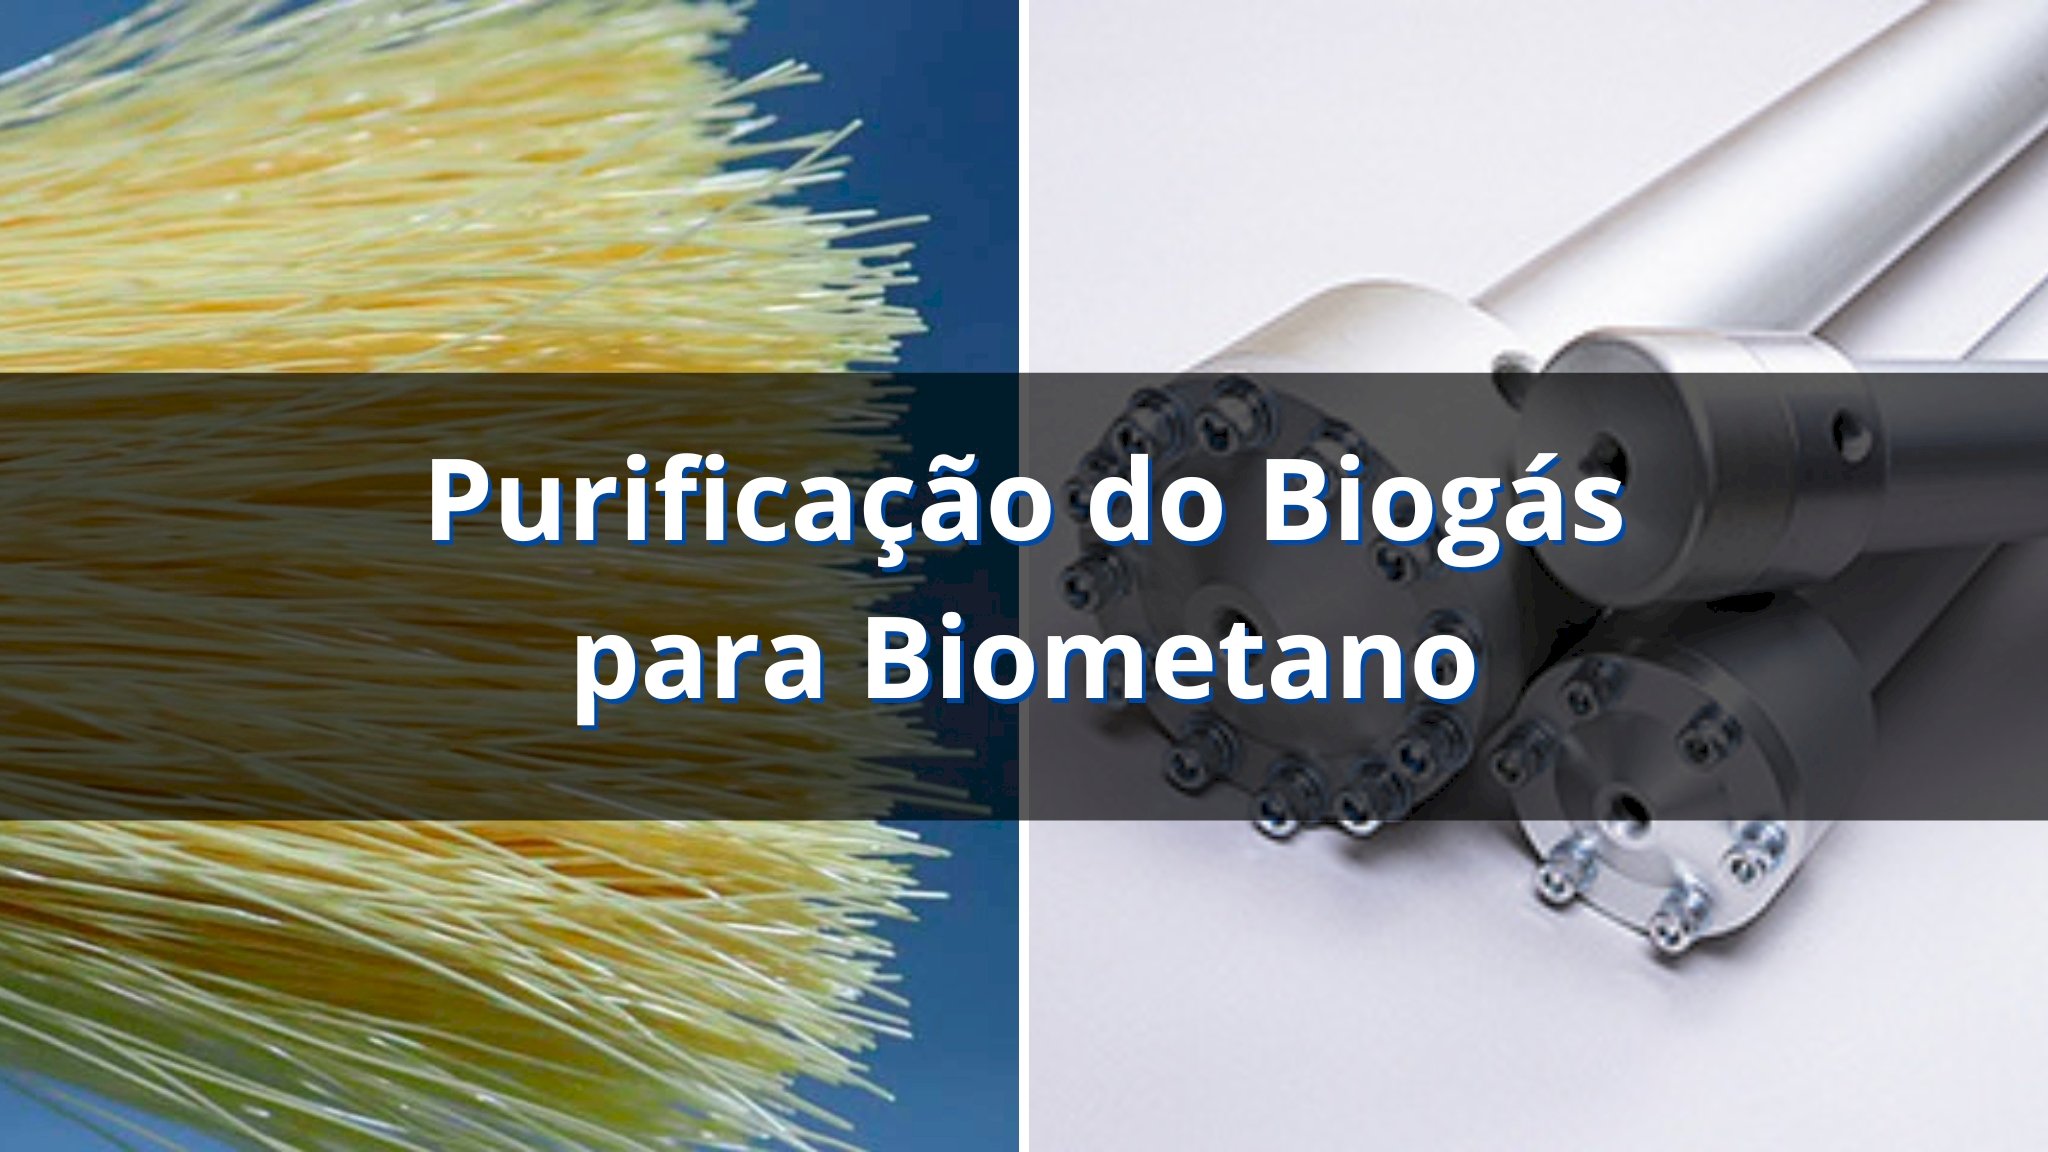 Purificação do Biogás para Biometano